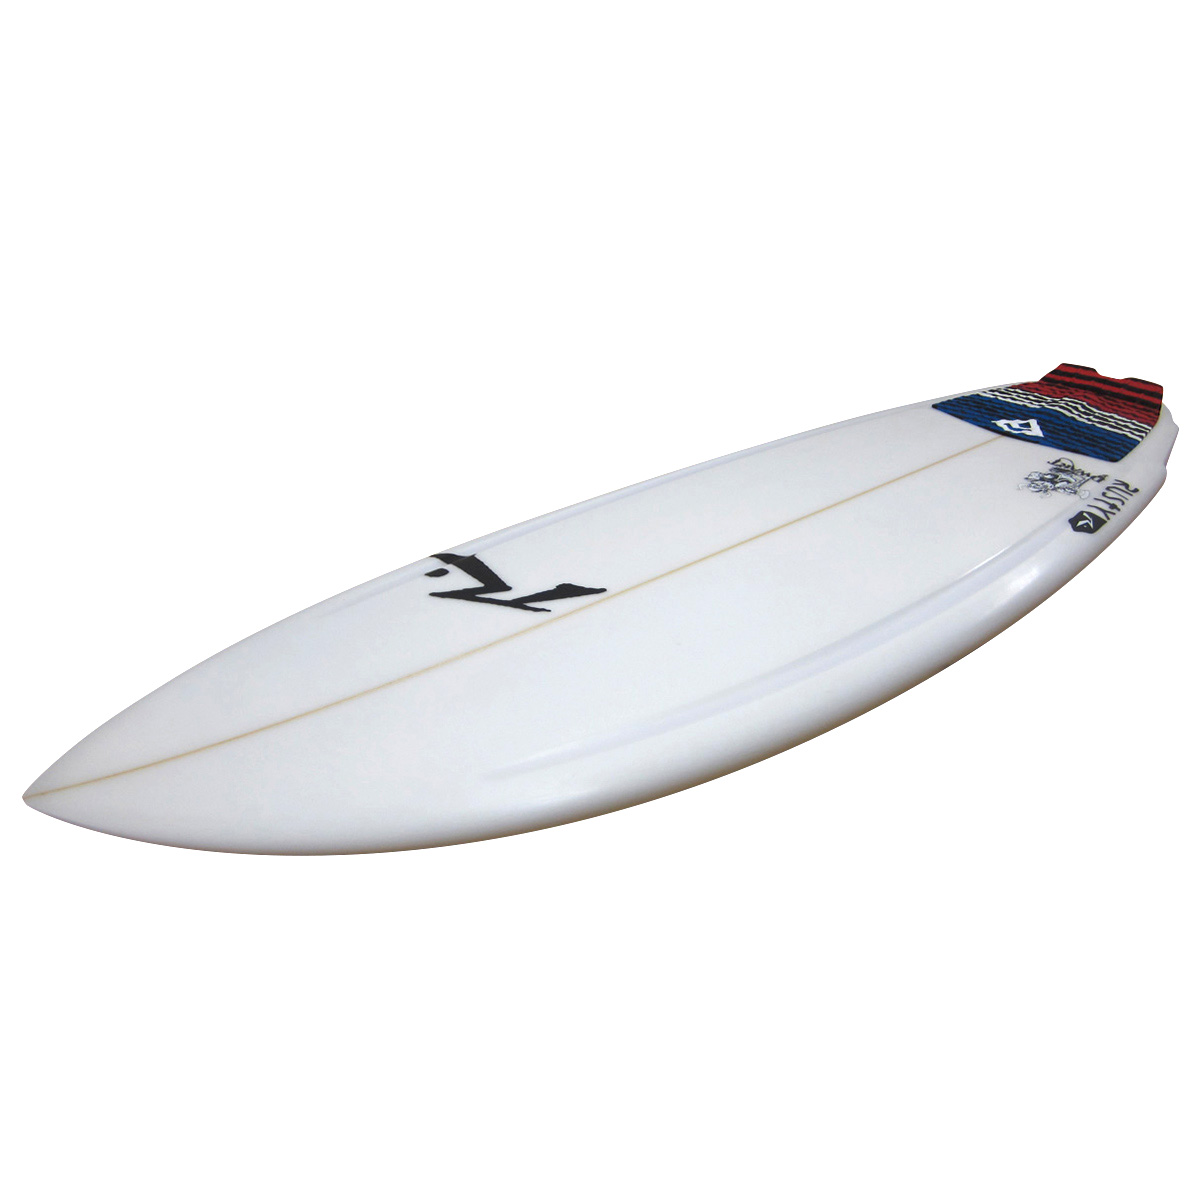 RUSTY SURFBOARDS / DWART 5`7